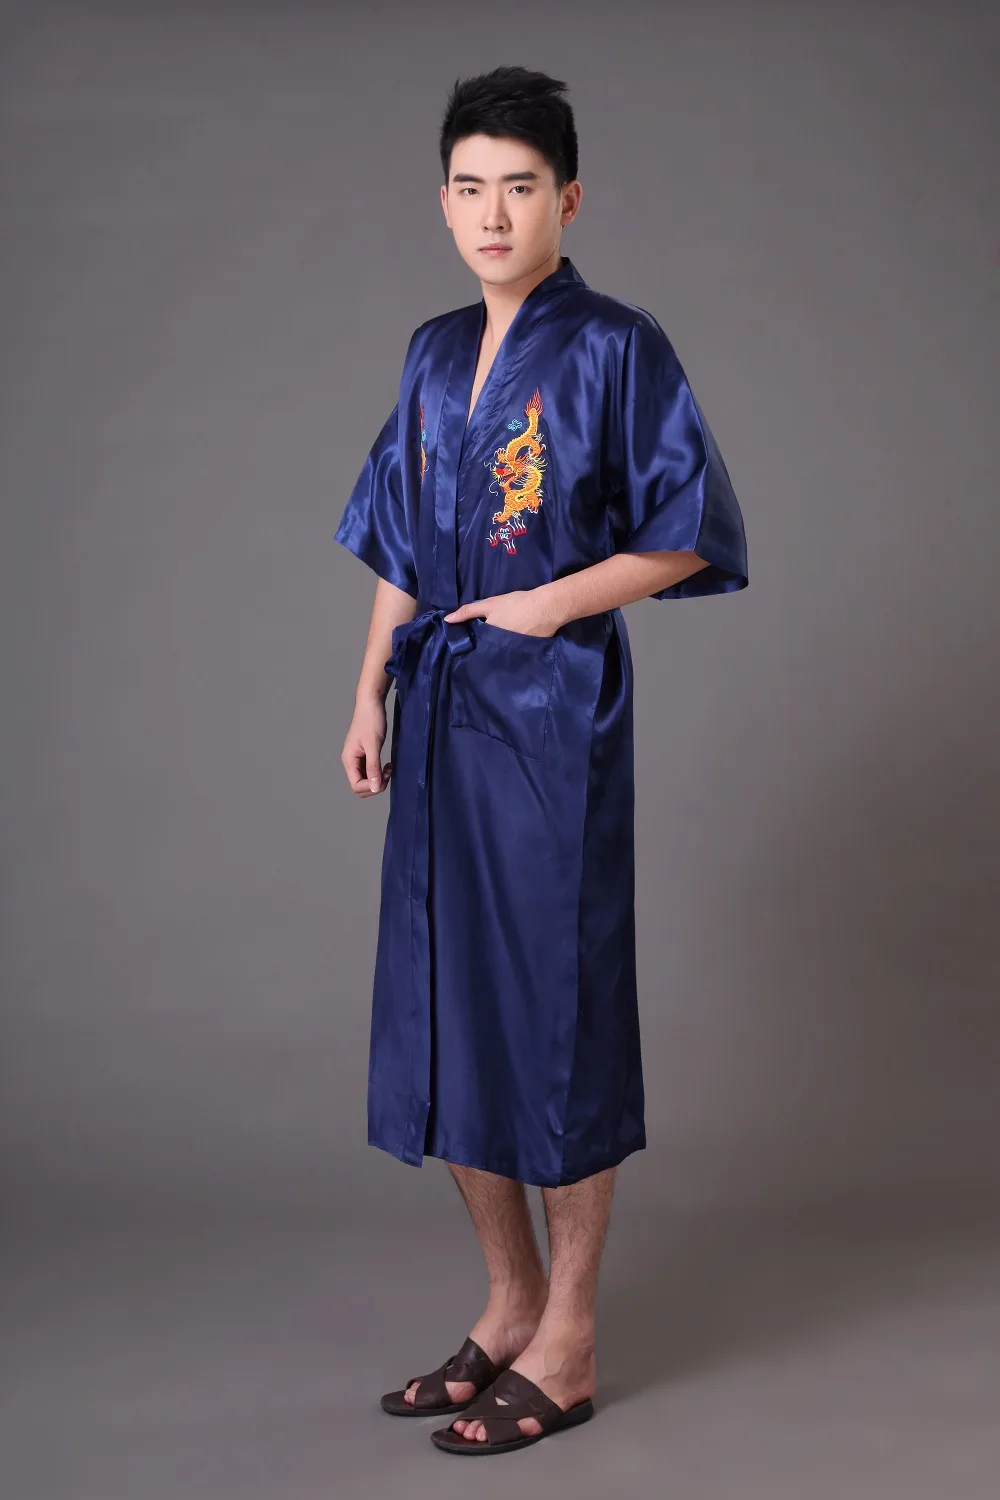 Темно-синие Традиционный китайский Для мужчин халат, халат с вышивкой дракона сатиновая Пижама Винтаж кимоно юката банный халат S M L XL XXL XXXL